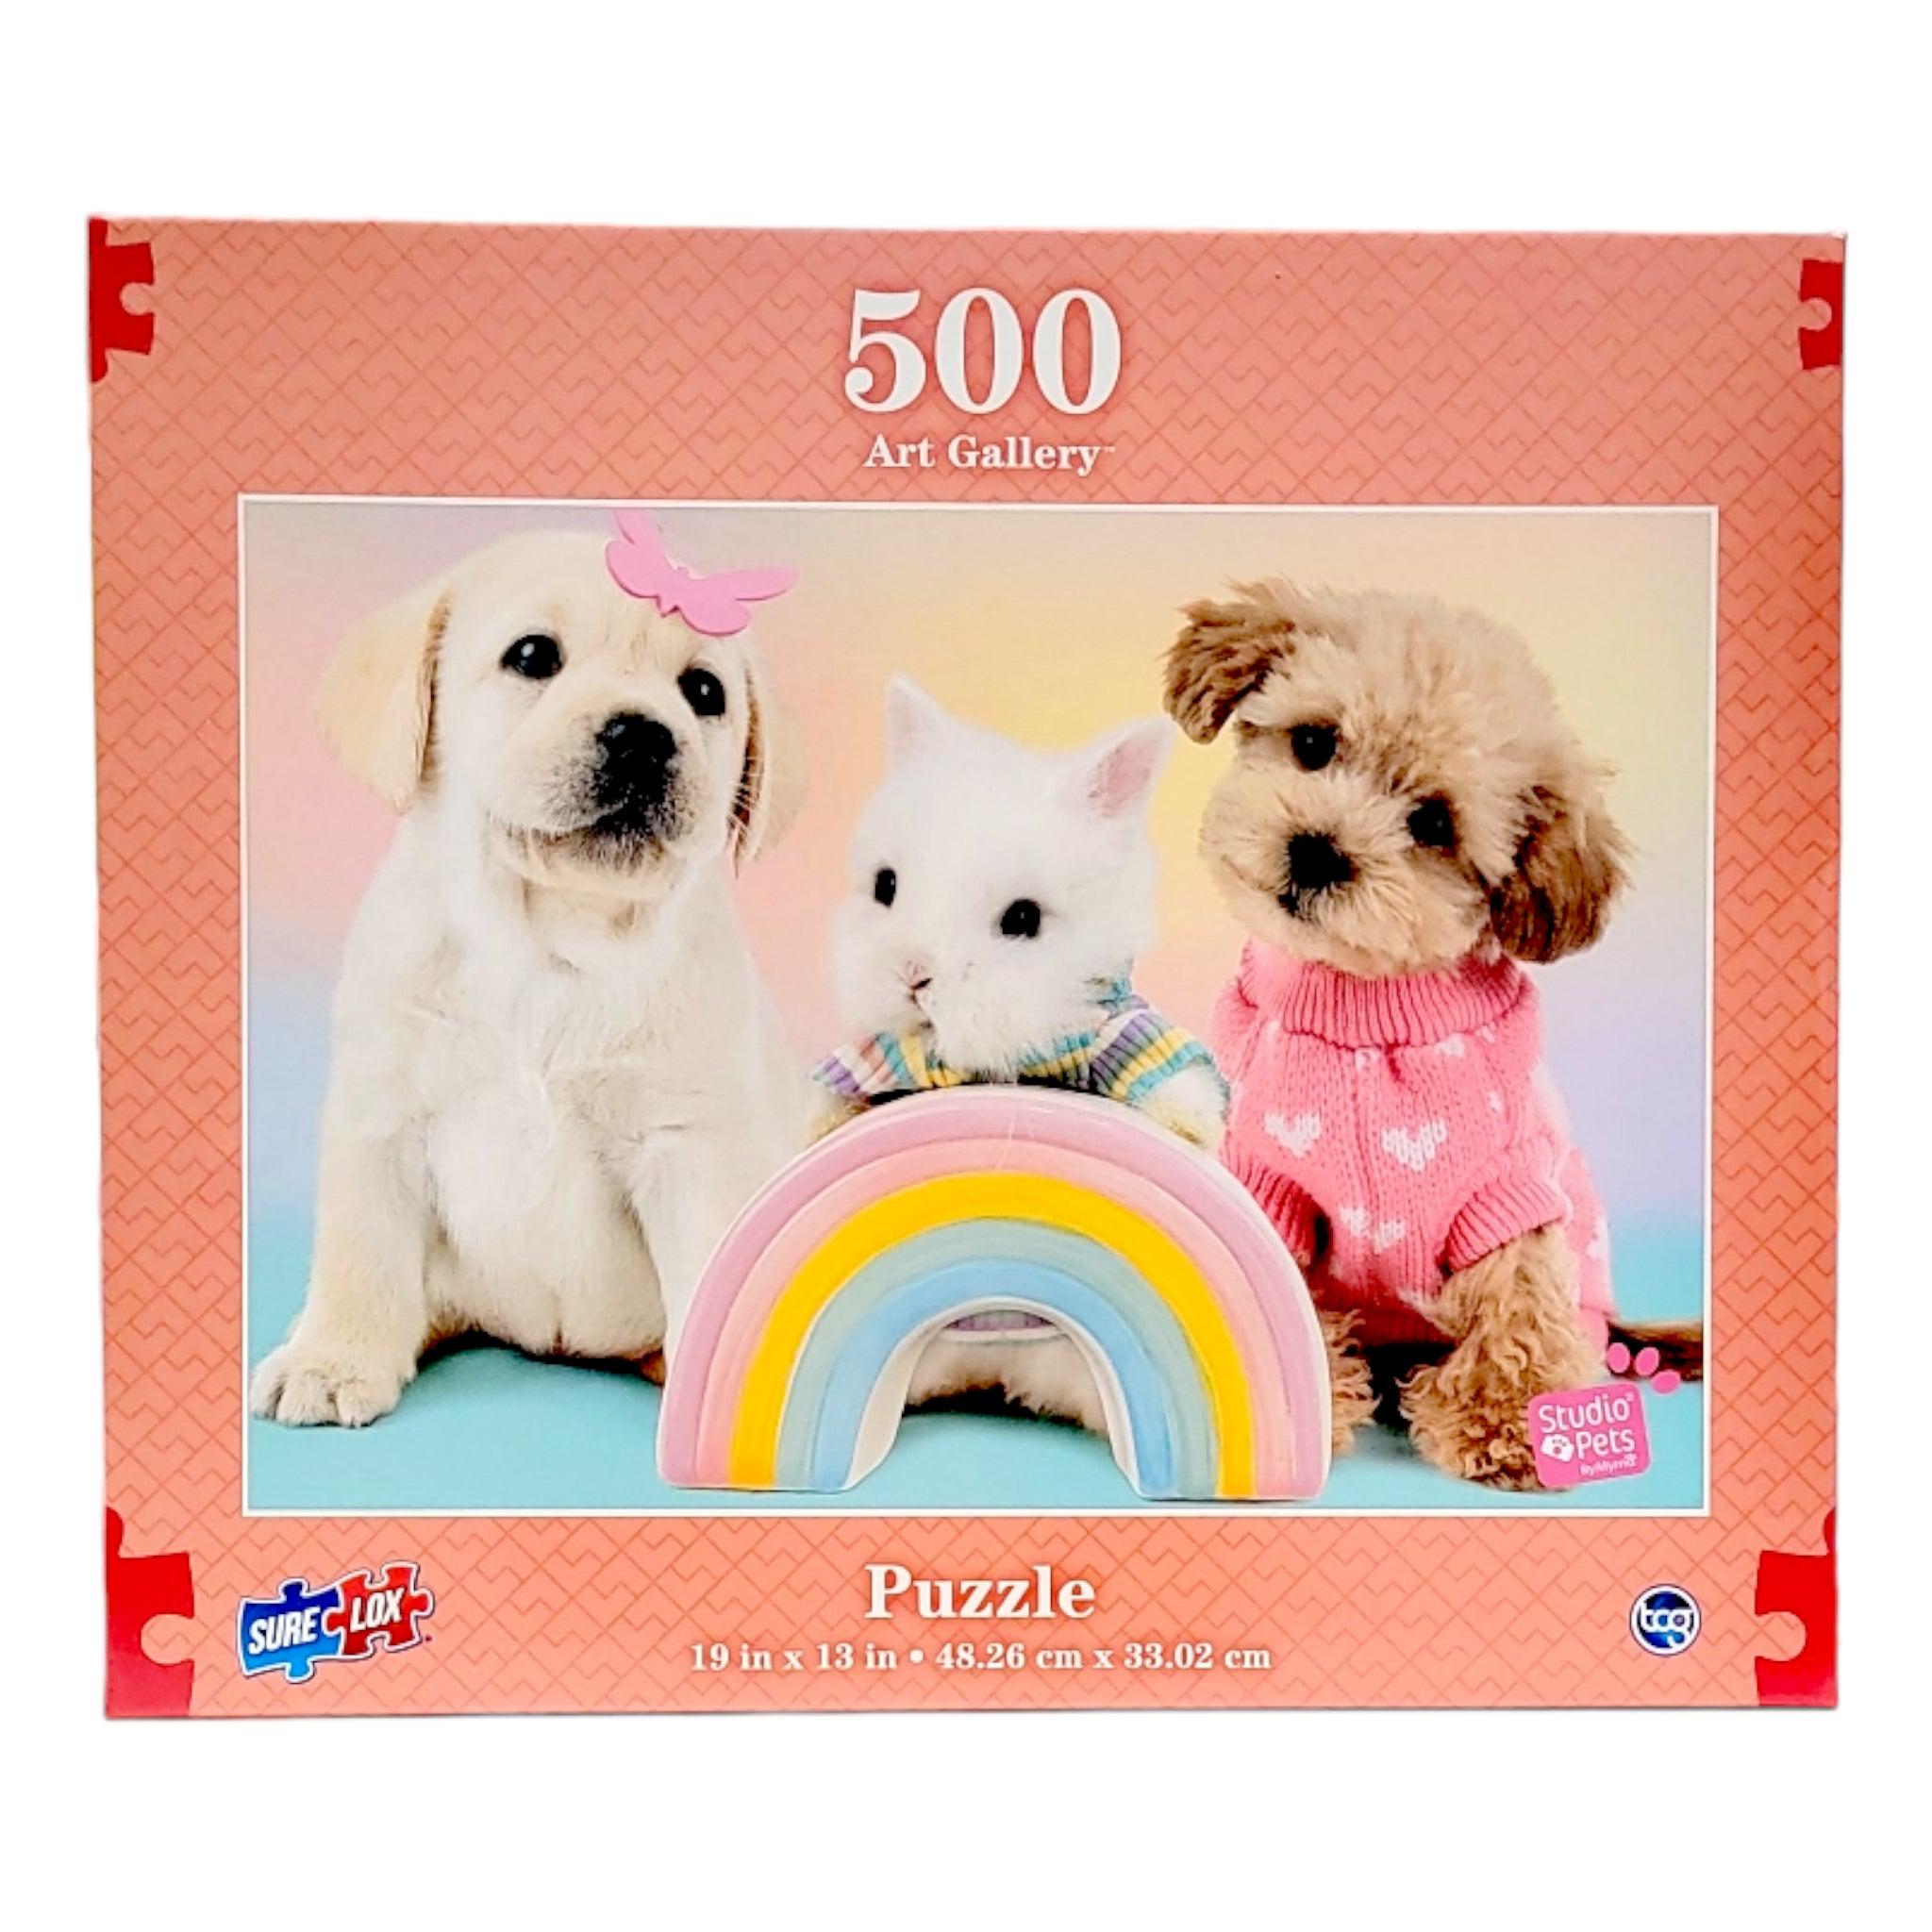 Puzzle 500 PCS Puppy